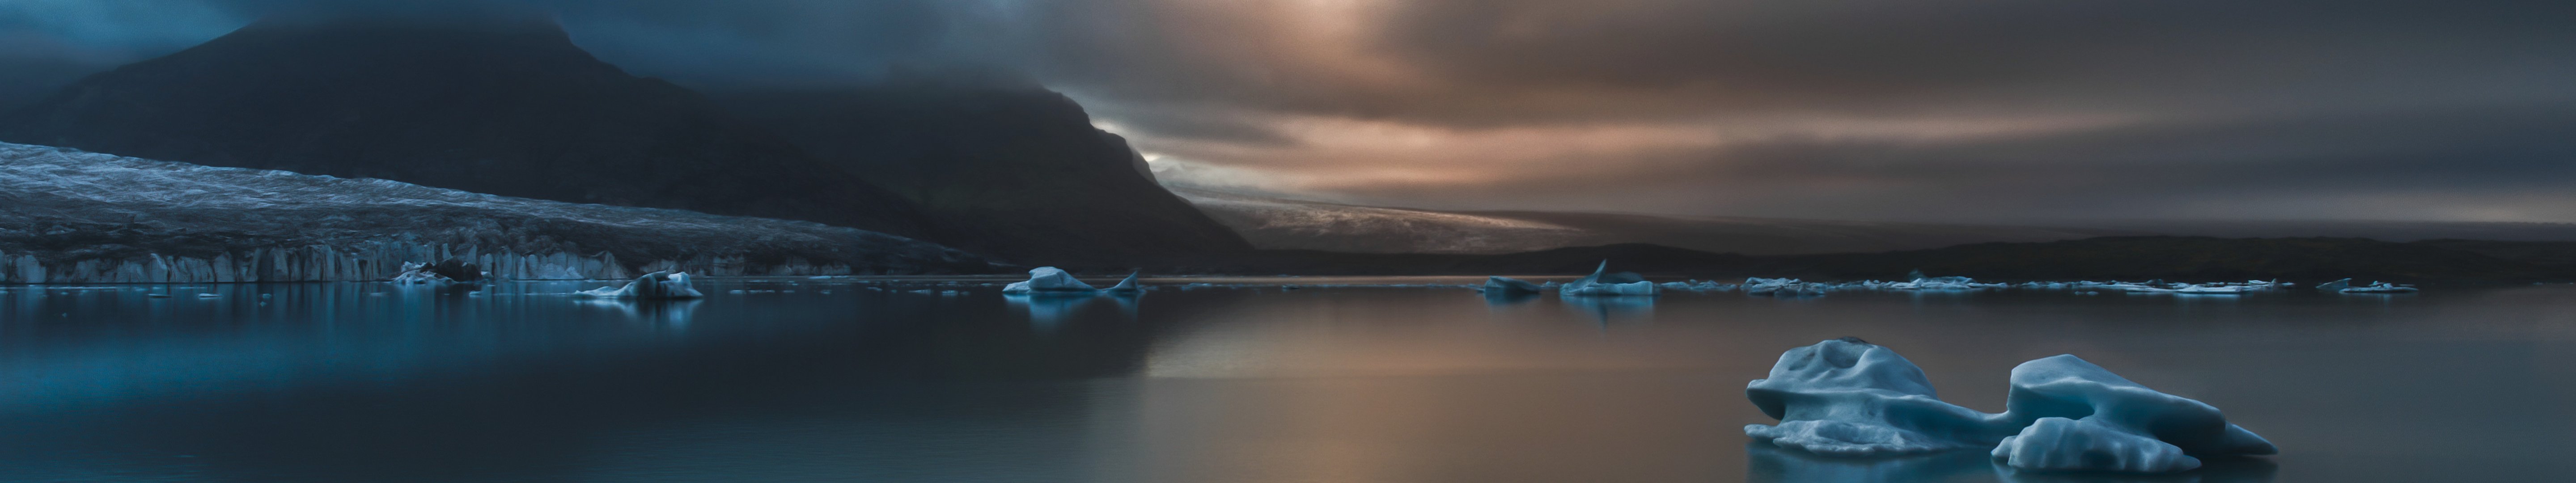 Hình nền đa màn hình iceberg: Những cảnh đẹp hoang sơ, tuyết phủ và các tảng băng giá sẽ khiến bạn cảm thấy thịnh soạn với hình nền đa màn hình iceberg. Xem ngay hình ảnh để cảm nhận sự mê hoặc của chúng.